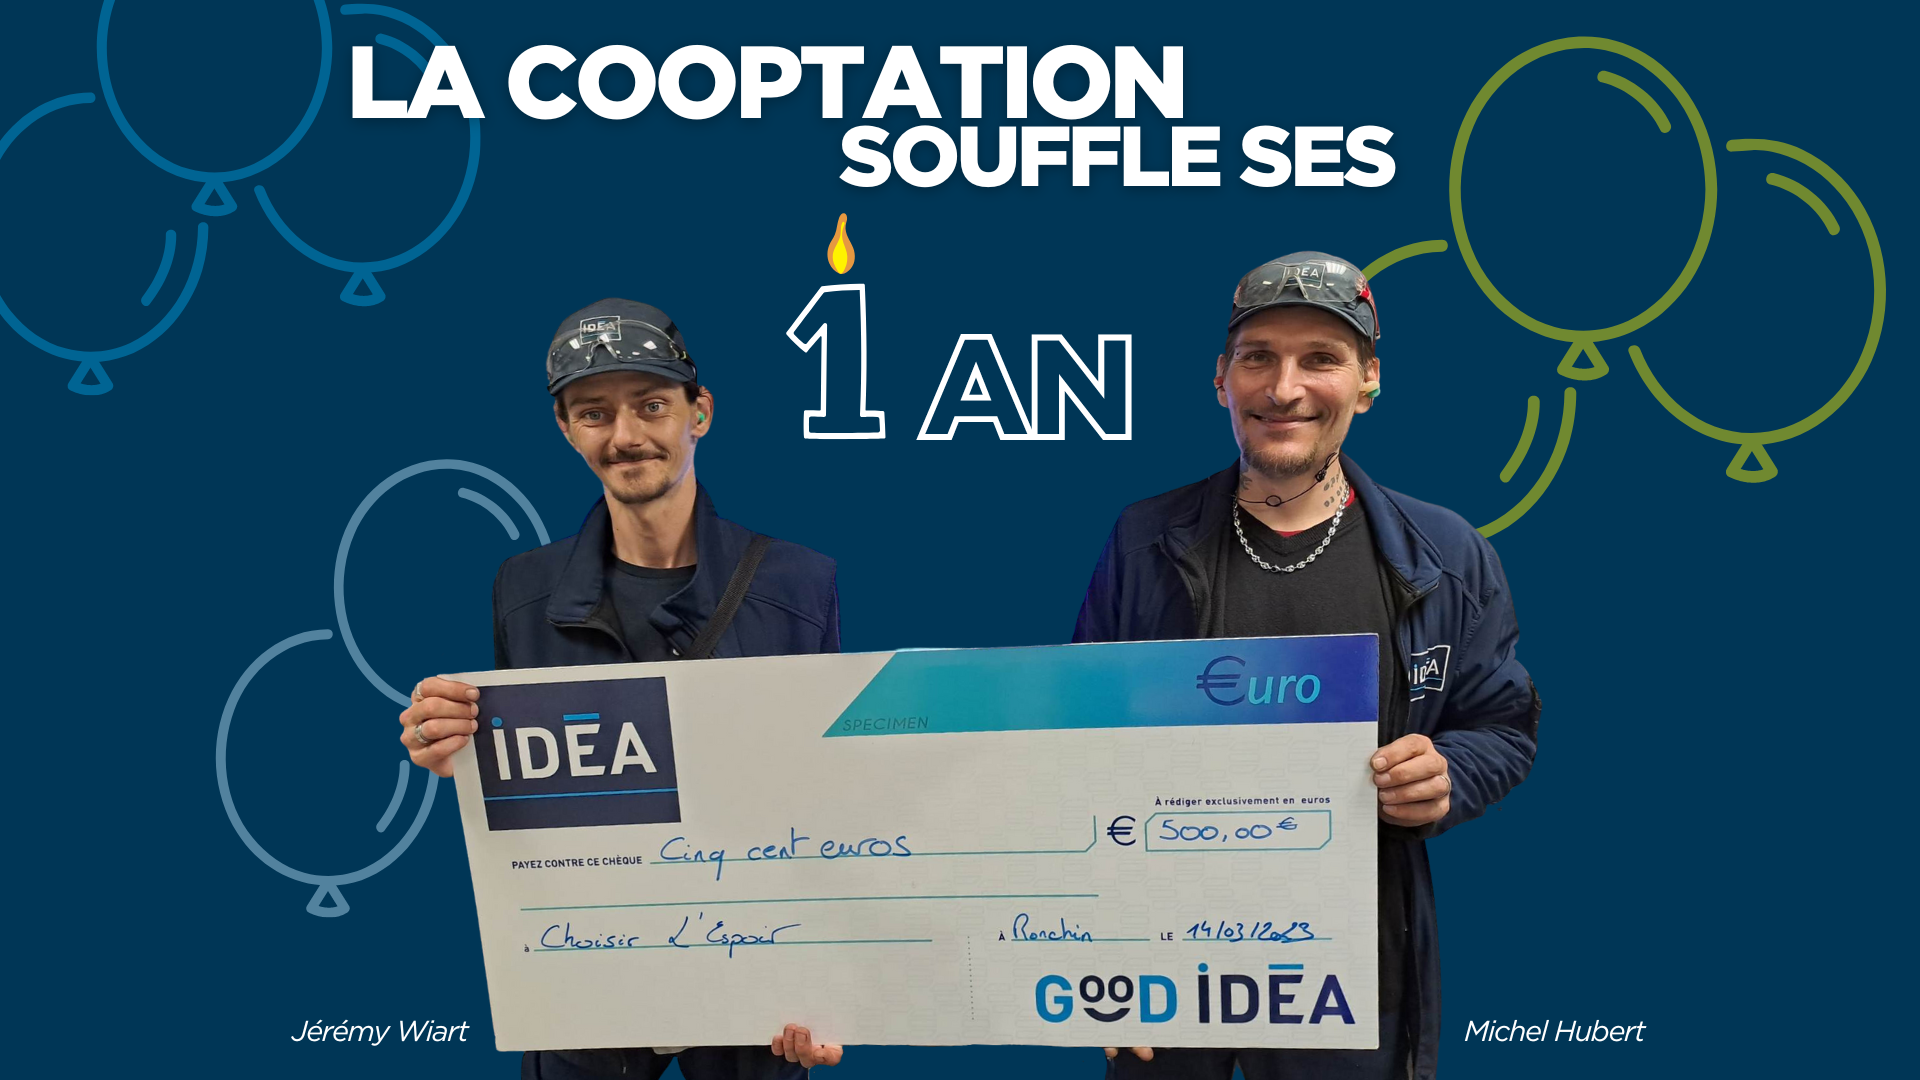 1 an cooptation IDEA